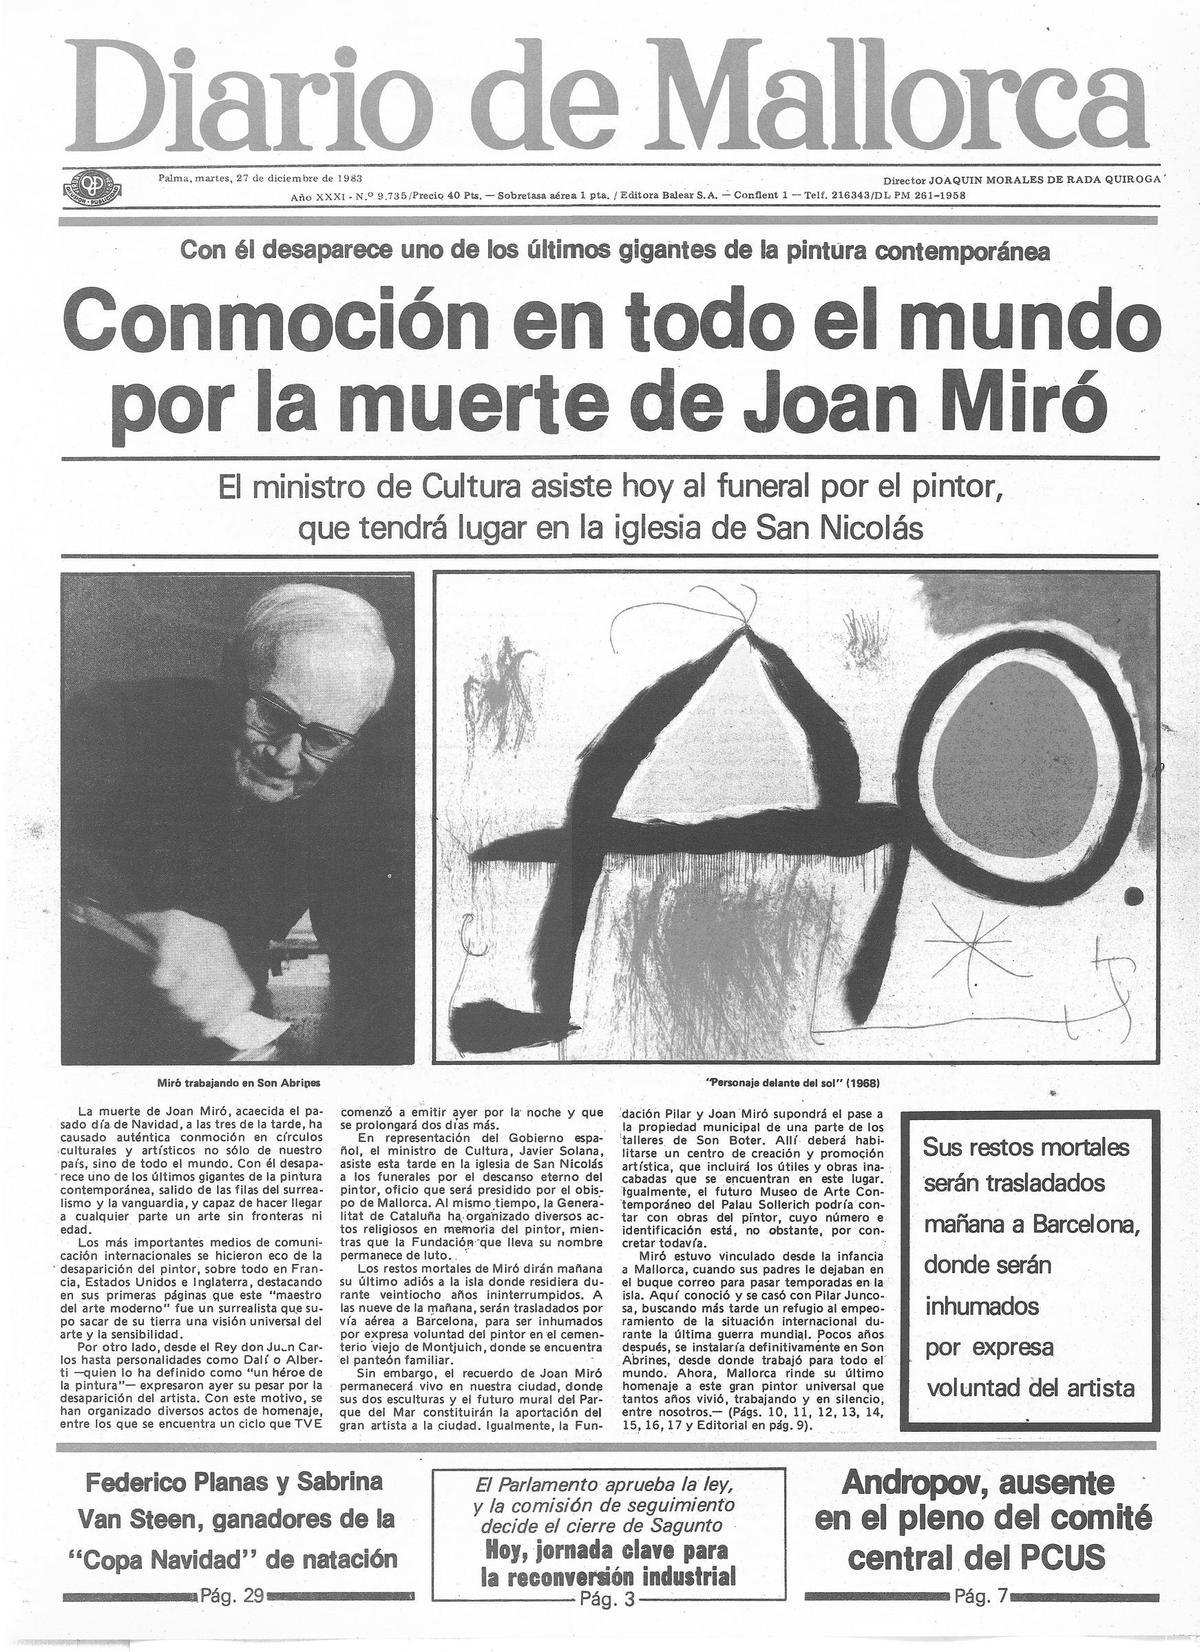 Portada de Diario de Mallorca del 27 de diciembre de 1983, con la muerte de Joan Miró